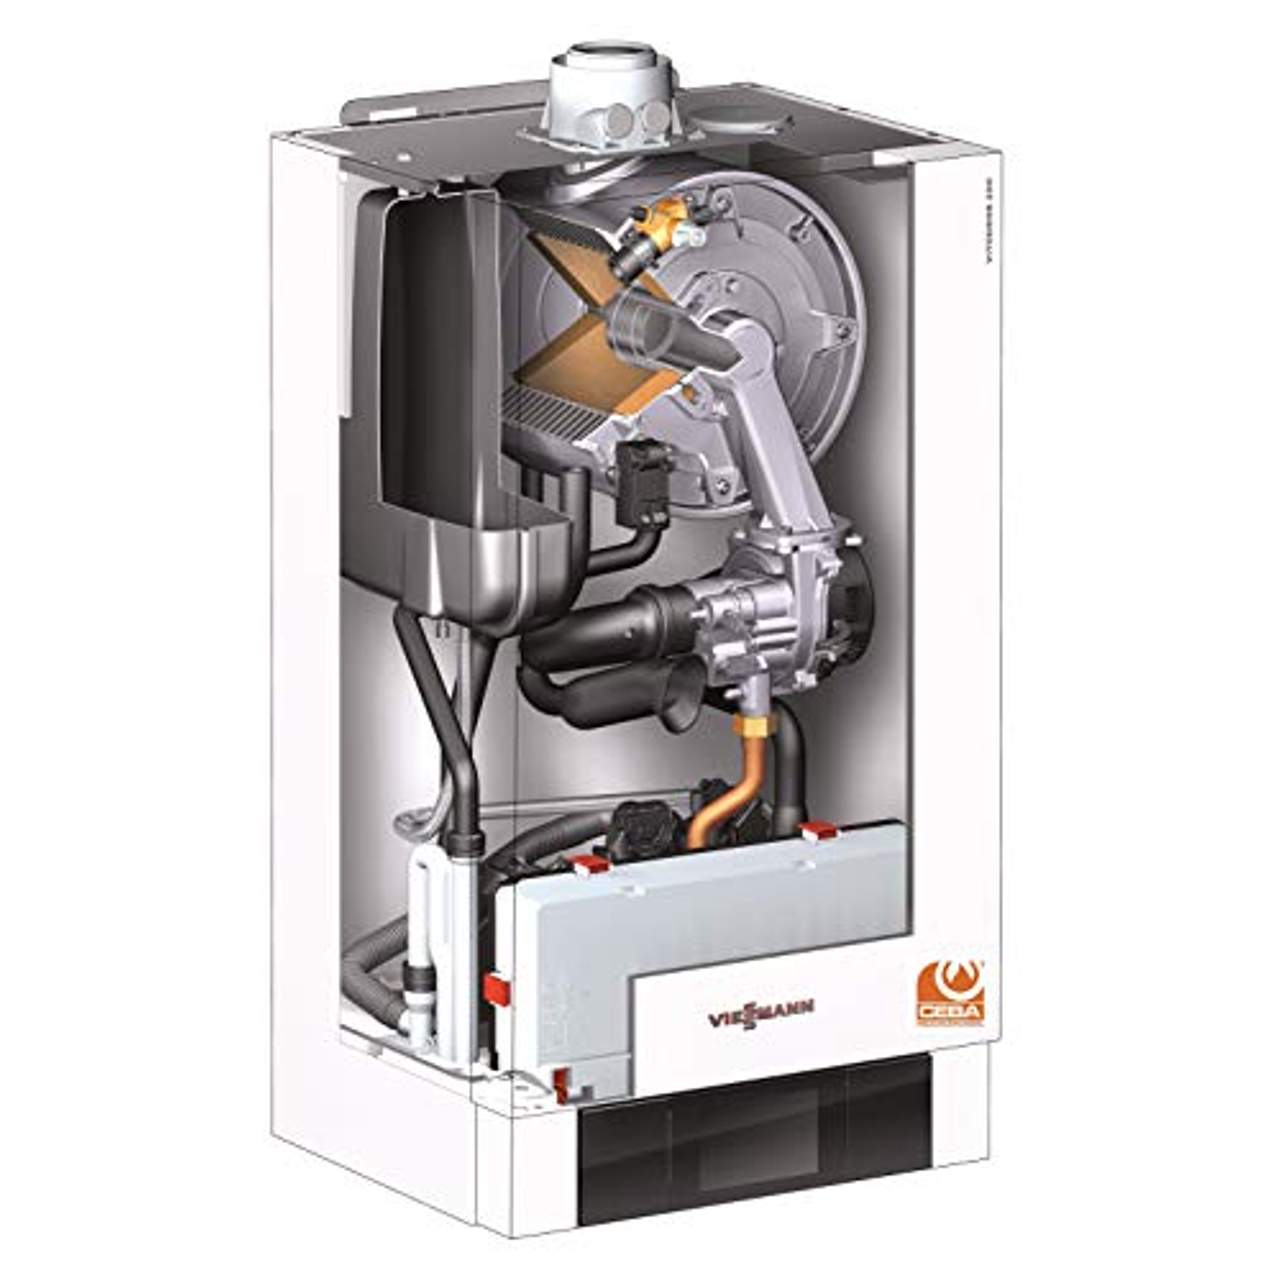 Details zu Viessmann Paket Vitodens 200-W 13 kW